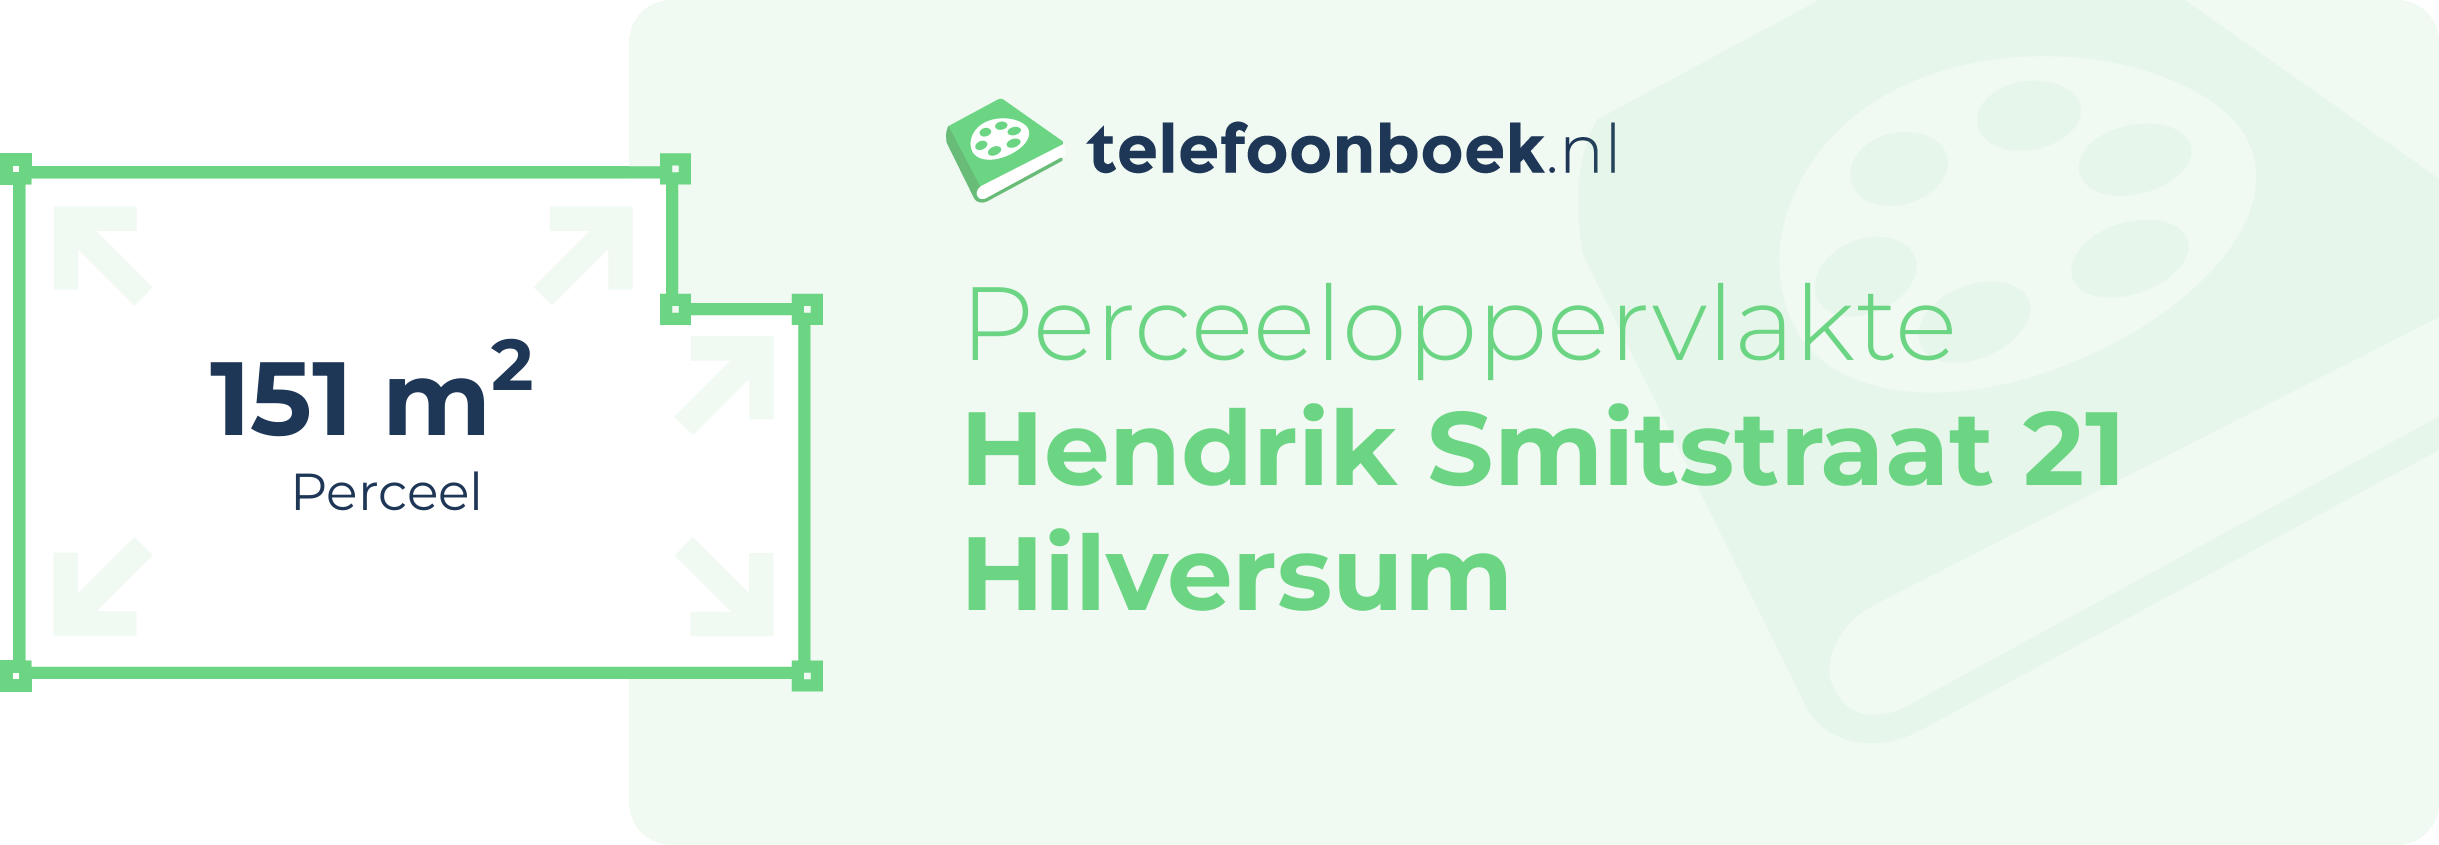 Perceeloppervlakte Hendrik Smitstraat 21 Hilversum